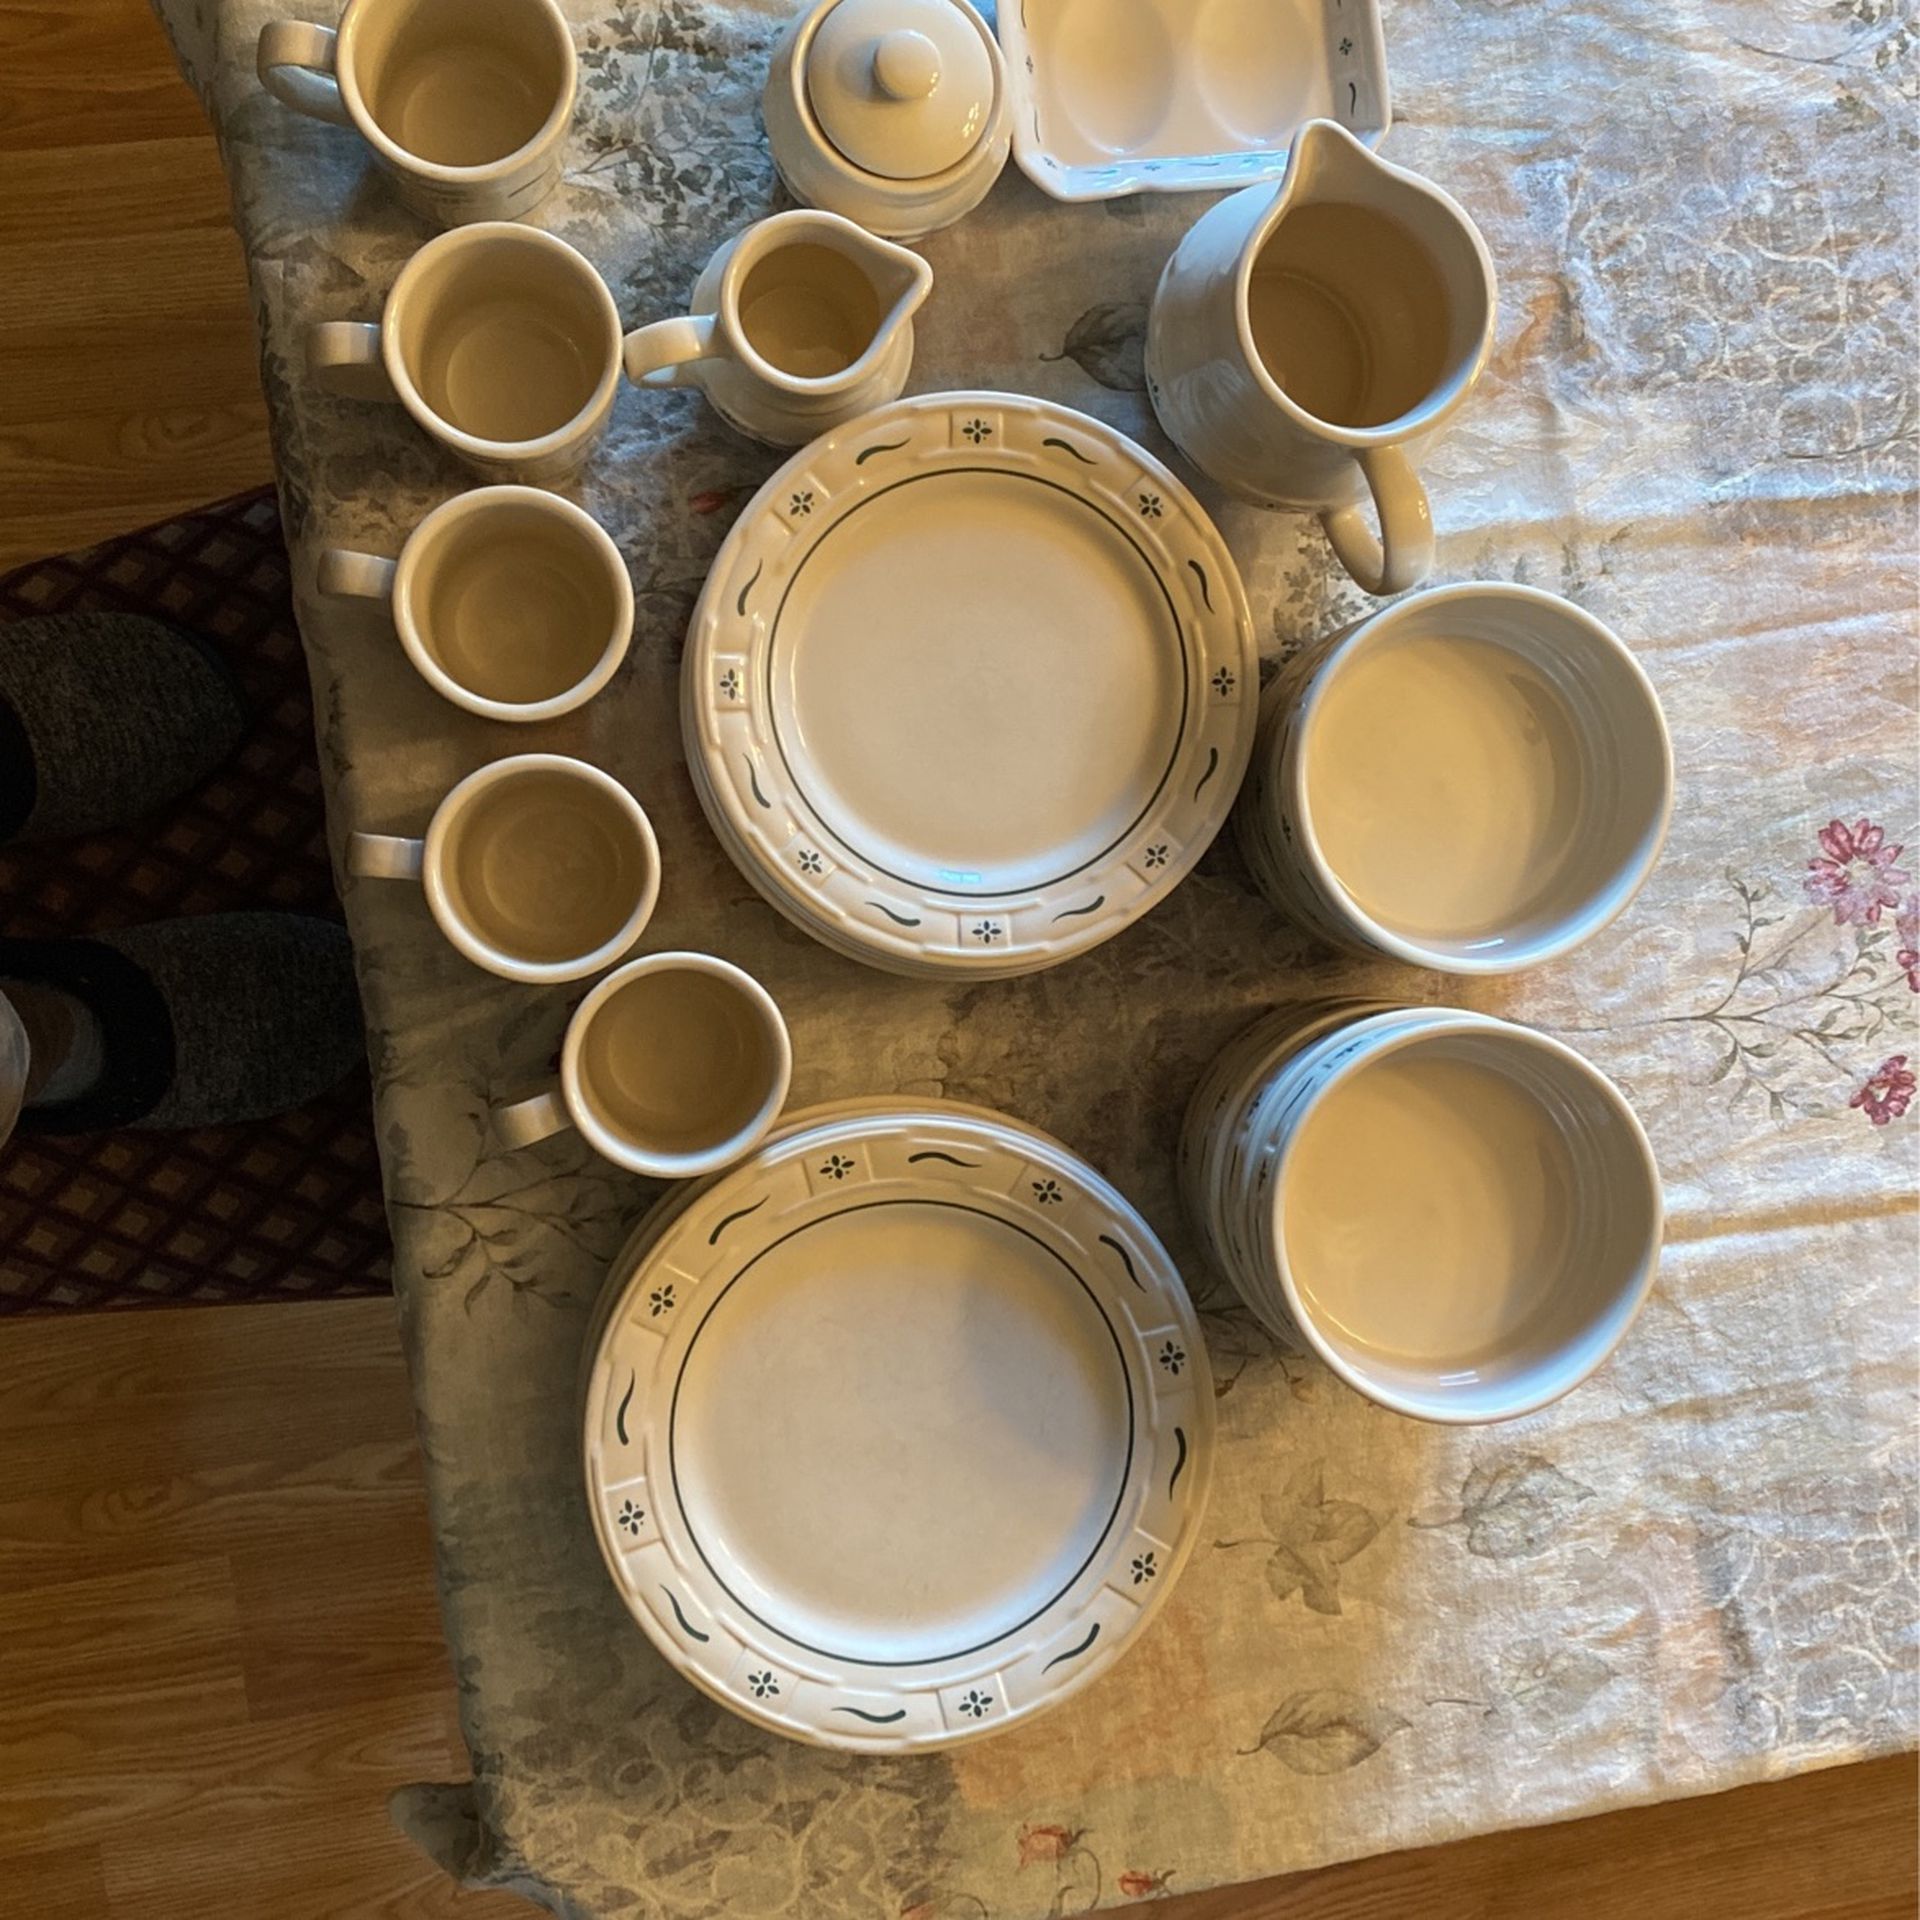 Longaberger Pottery Set